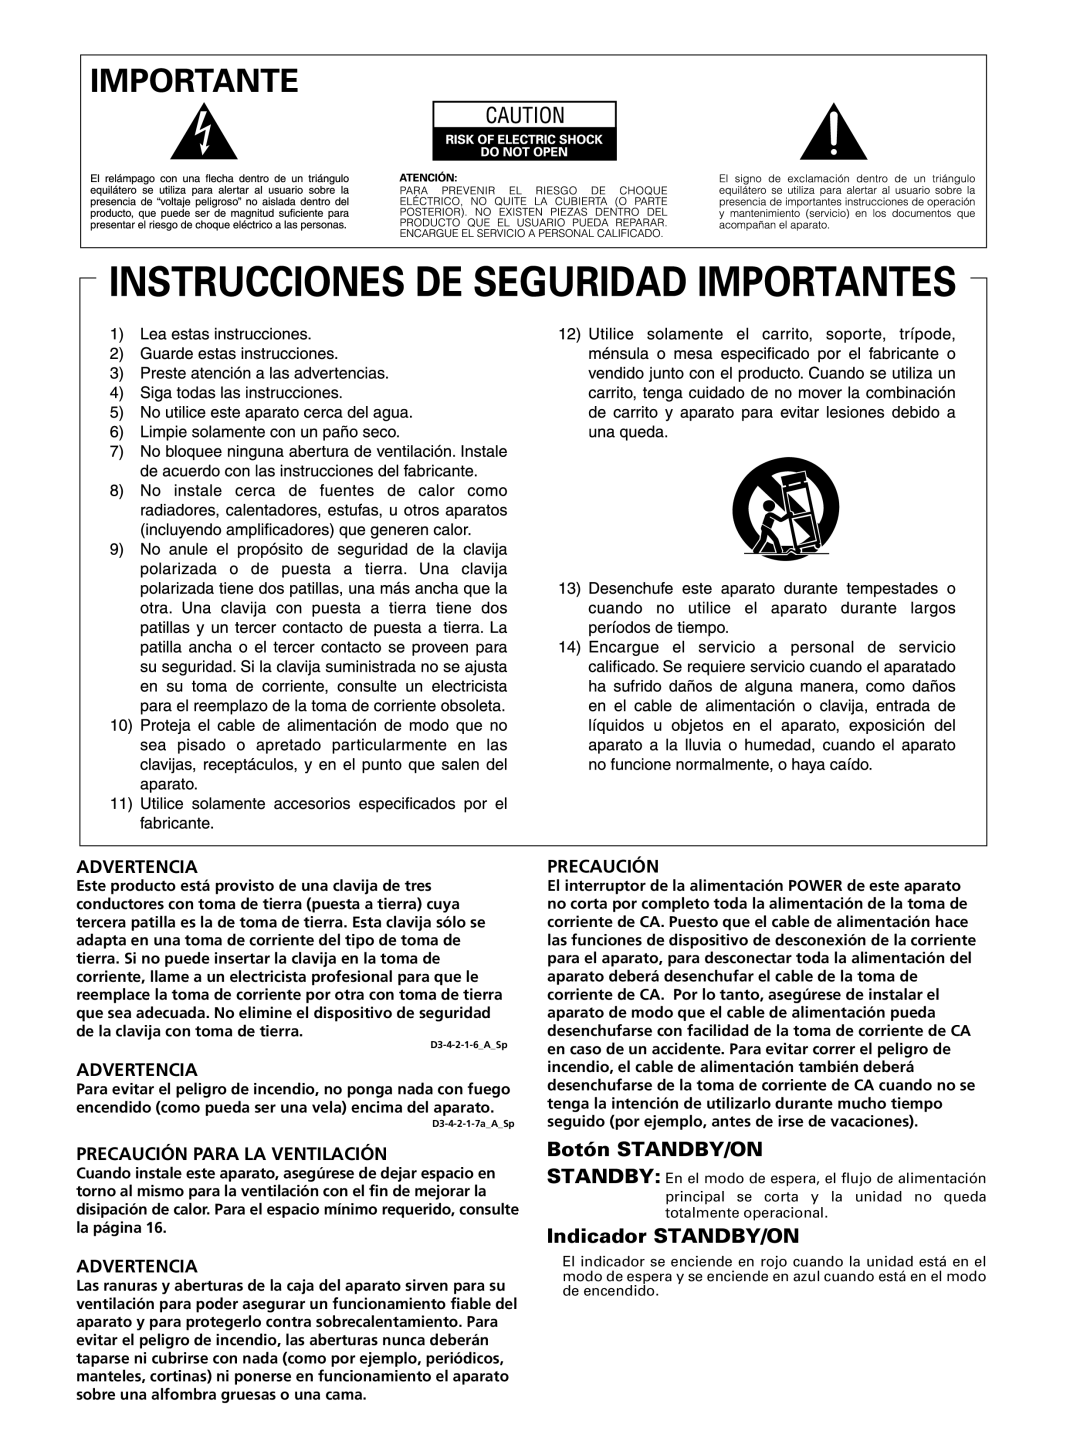 Pioneer PRO-FHD1 operating instructions Botón STANDBY/ON, Indicador STANDBY/ON, Advertencia, Precaución Para La Ventilación 